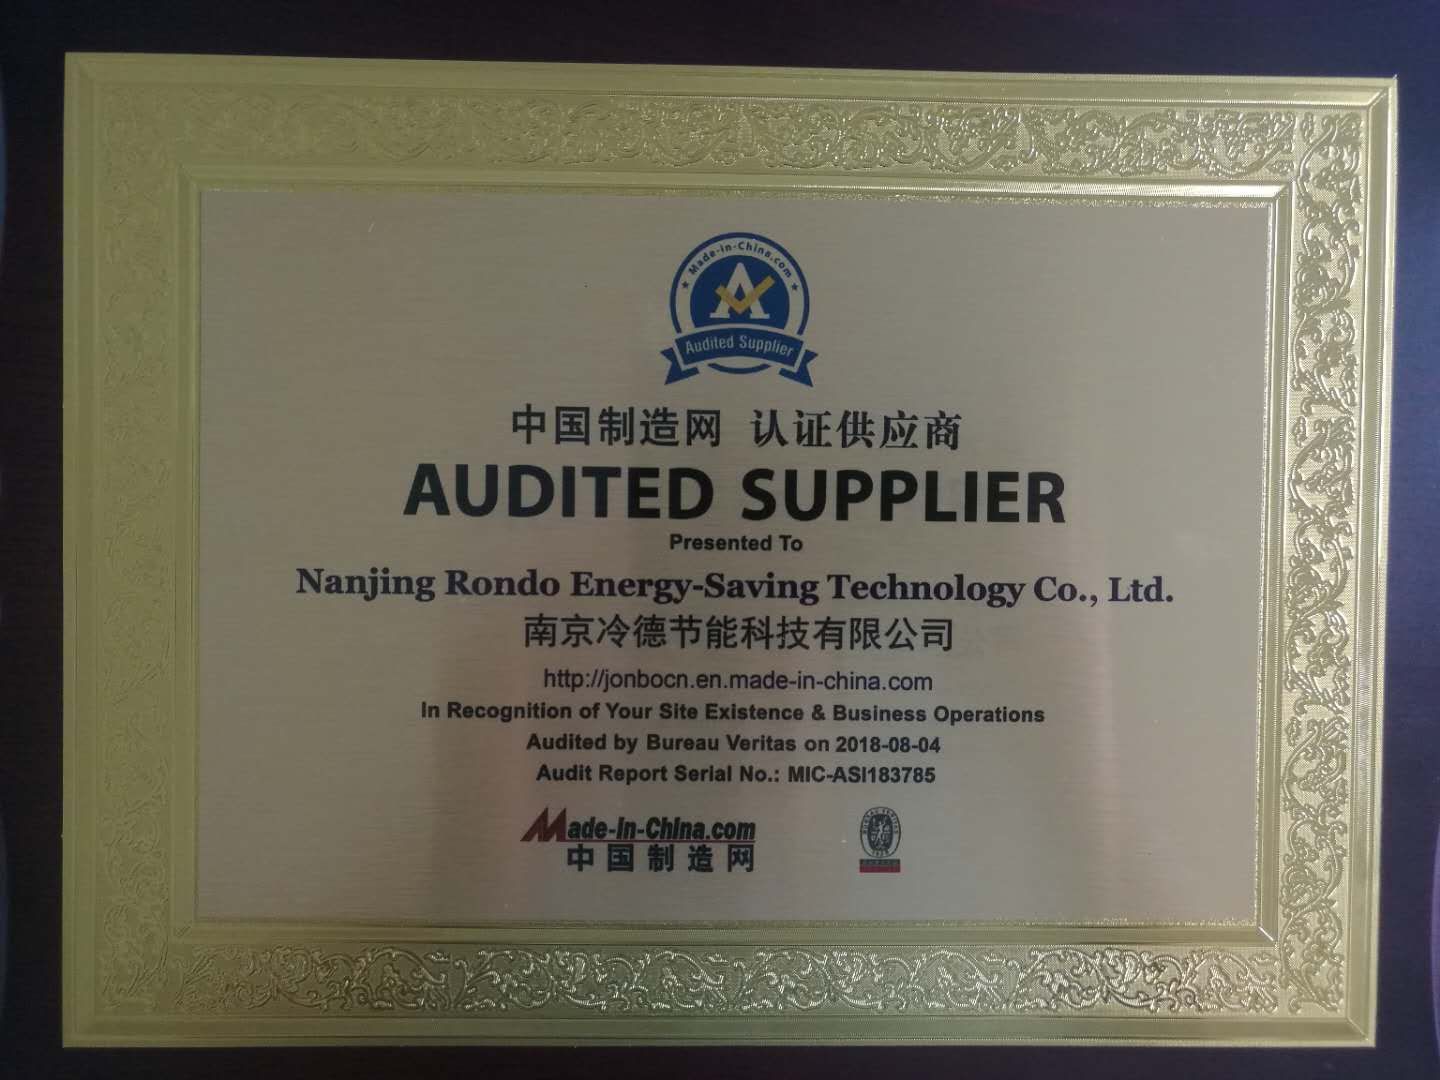 恭喜冷德通过中国制造网的SGS认证，成为“认证供应商”